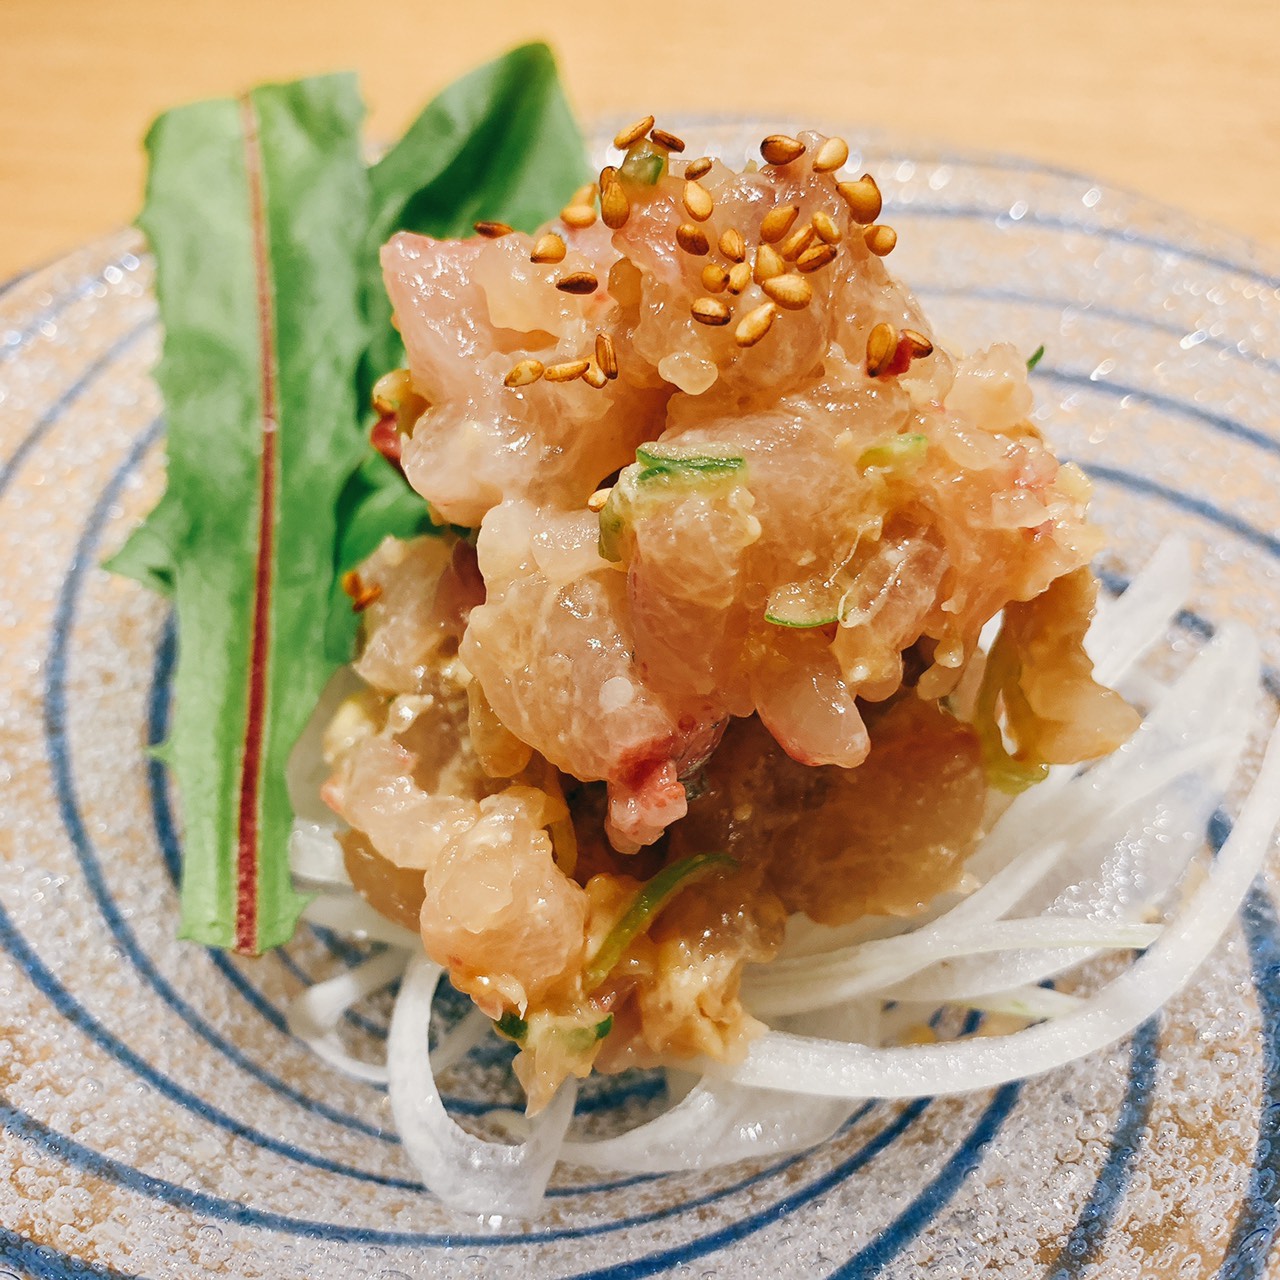 シマアジのなめろう 海の恵み 食の底力 Japan 公式レシピサイト